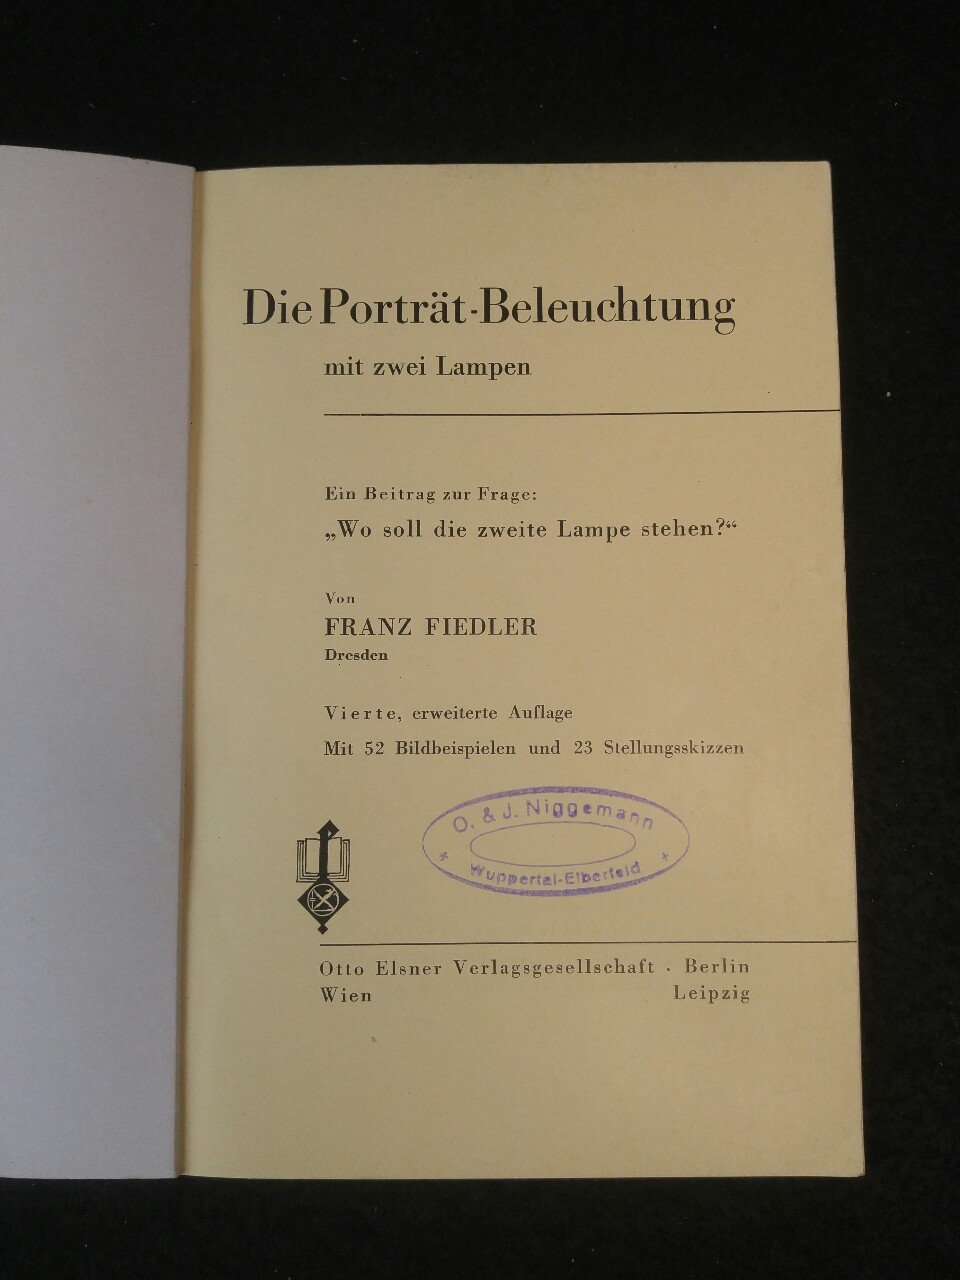 Die Porträt-Beleuchtung mit zwei Lampen.“ (Franz Fiedler) – Buch  antiquarisch kaufen – A02Diq8G01ZZc